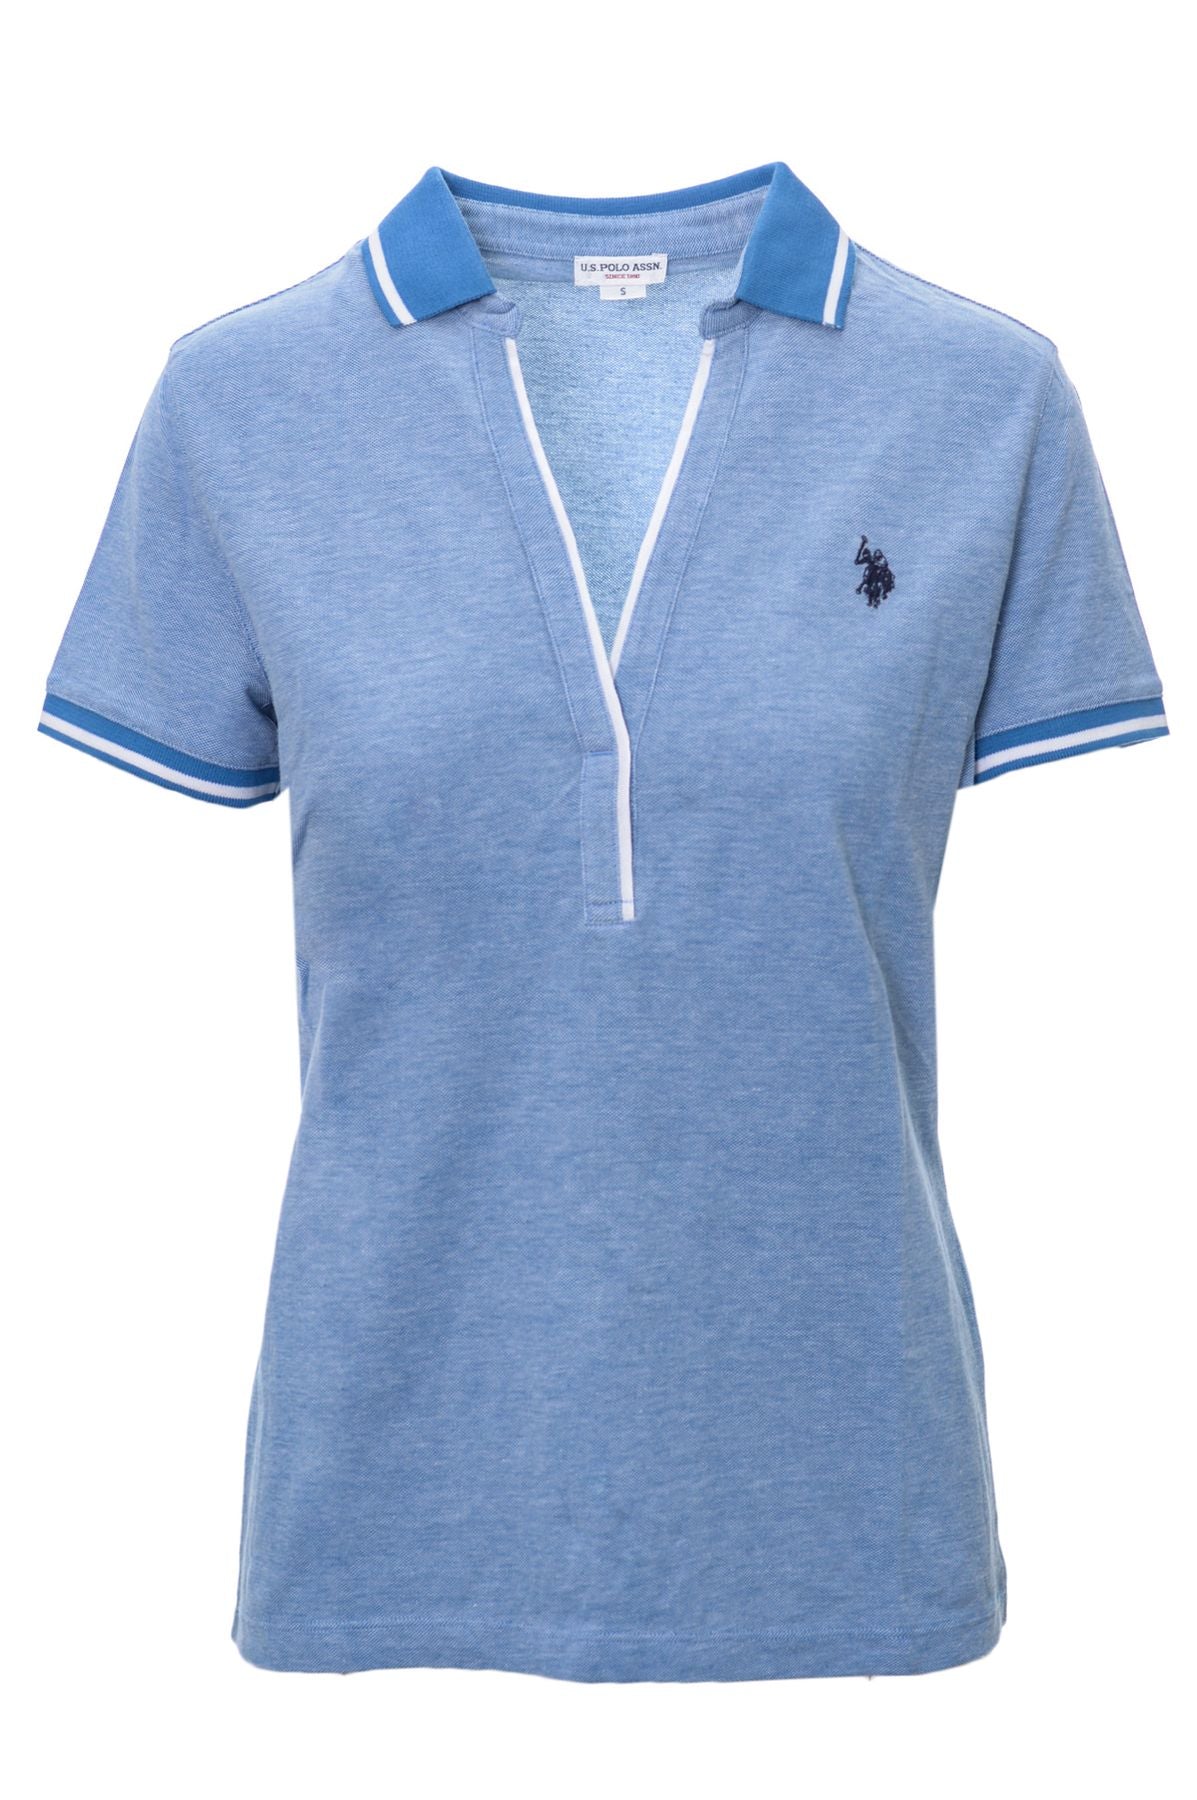 USPOLO Spring/Summer Cotton Polo Shirt